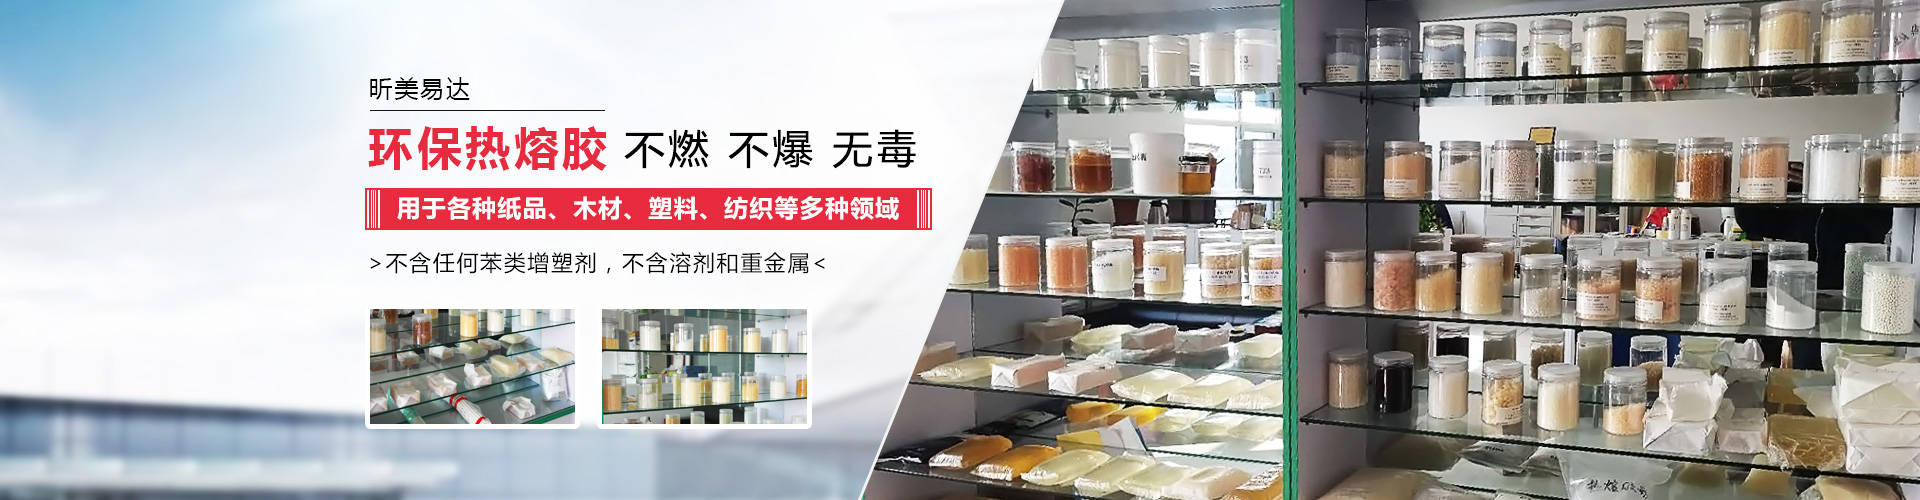 青島舉昶塑膠專業提供塑料件加工,汽車塑料配件等產品服務.